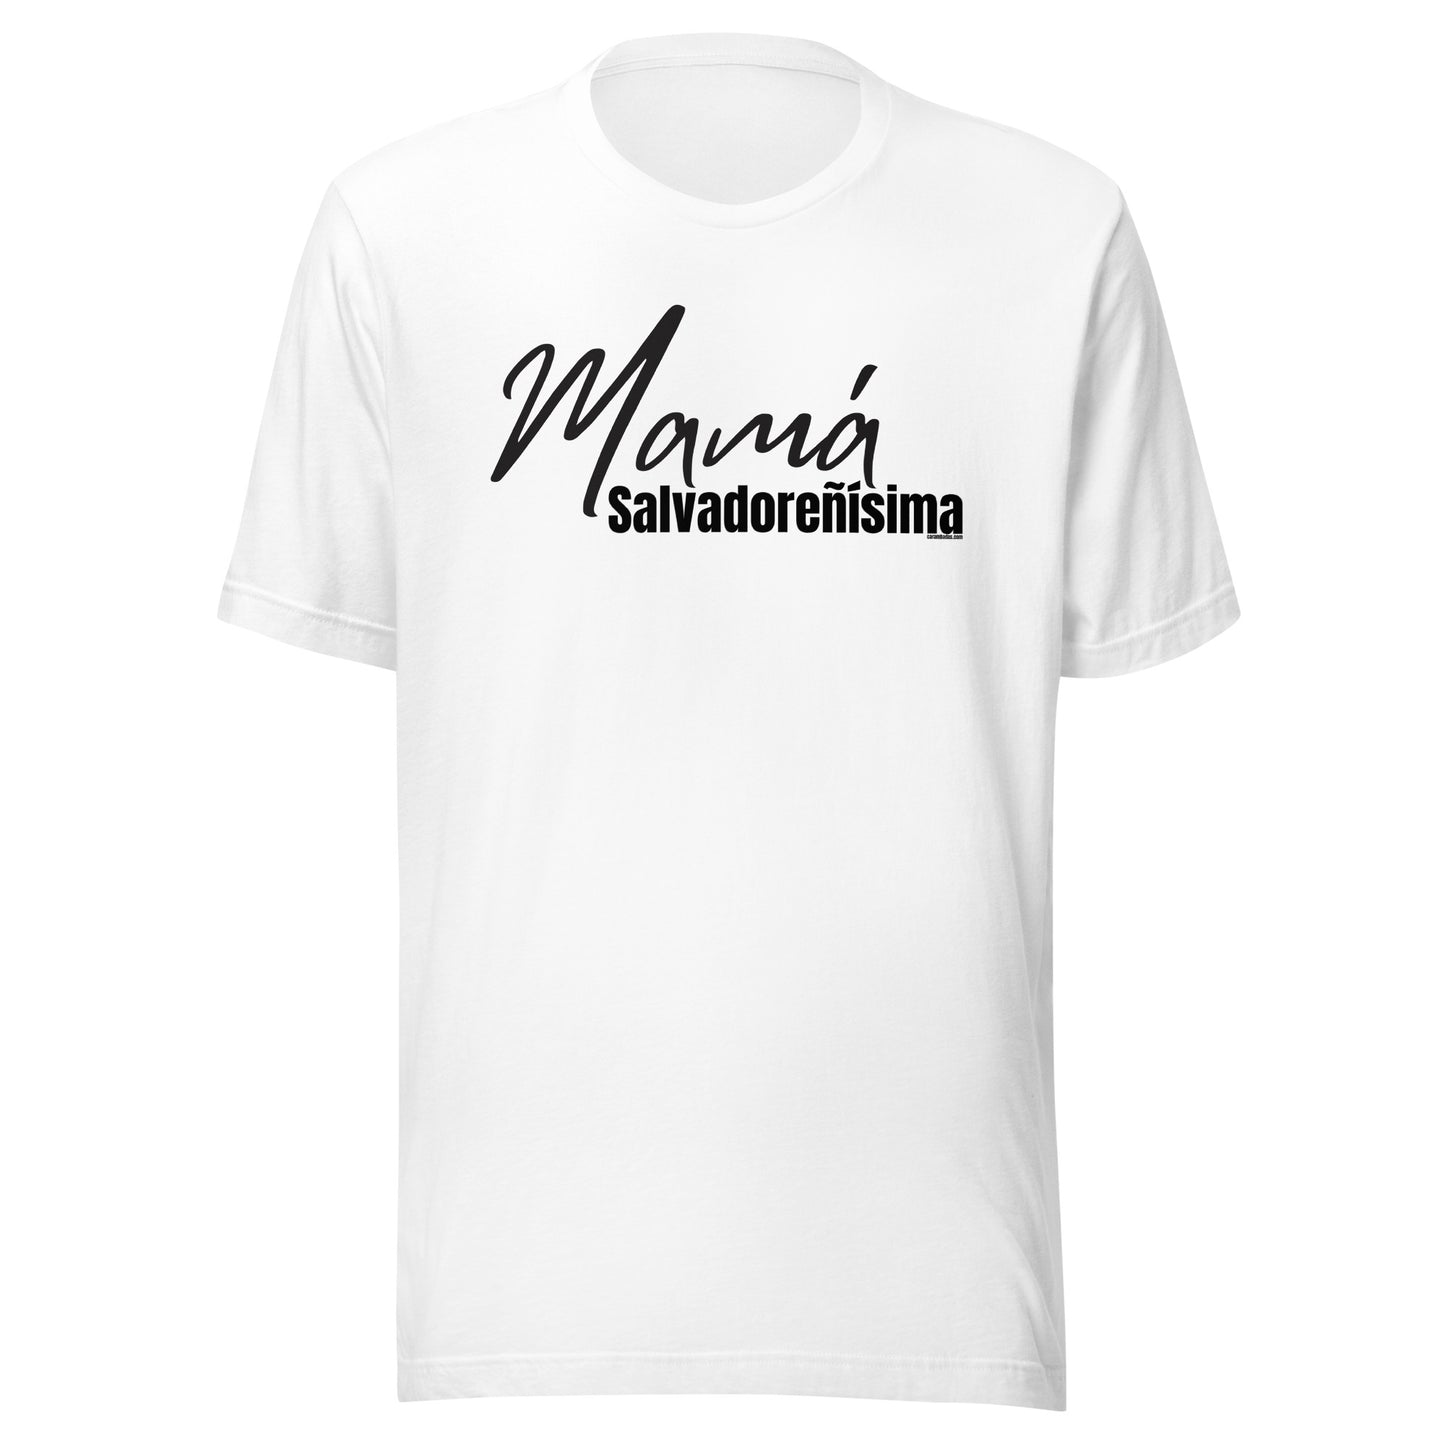 Mamá Salvadoreñísima Unisex t-shirt